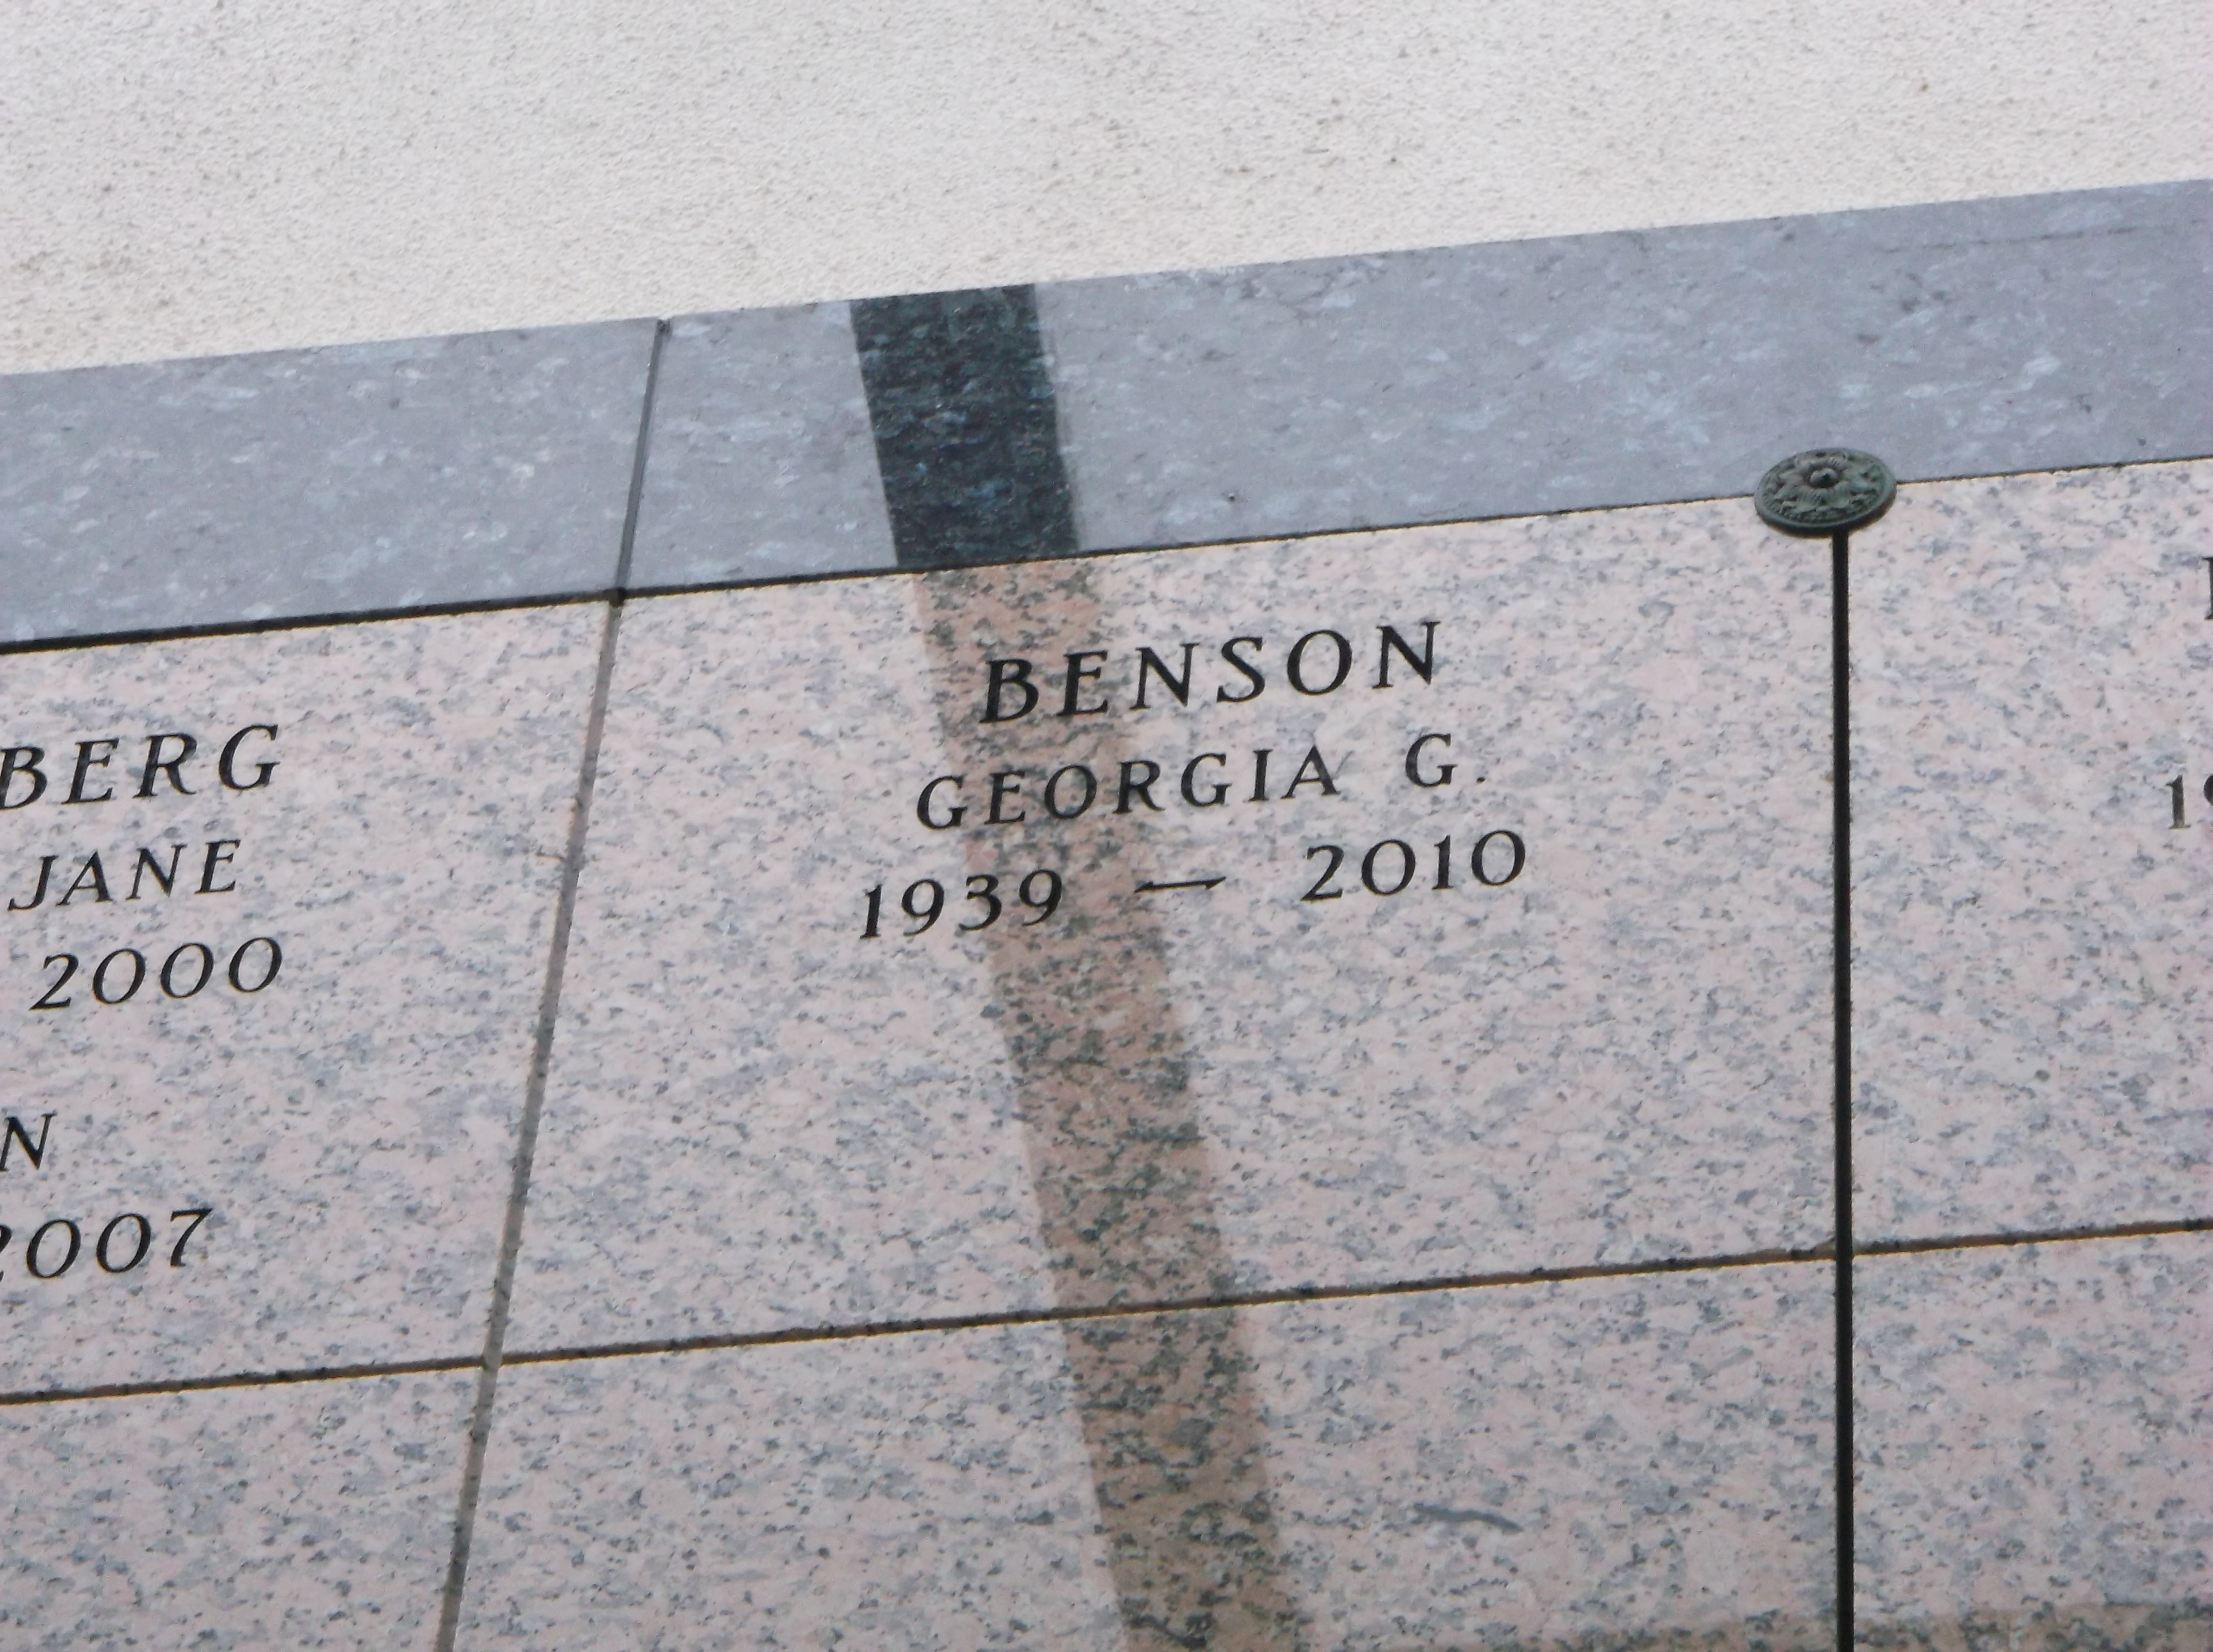 Georgia G Benson